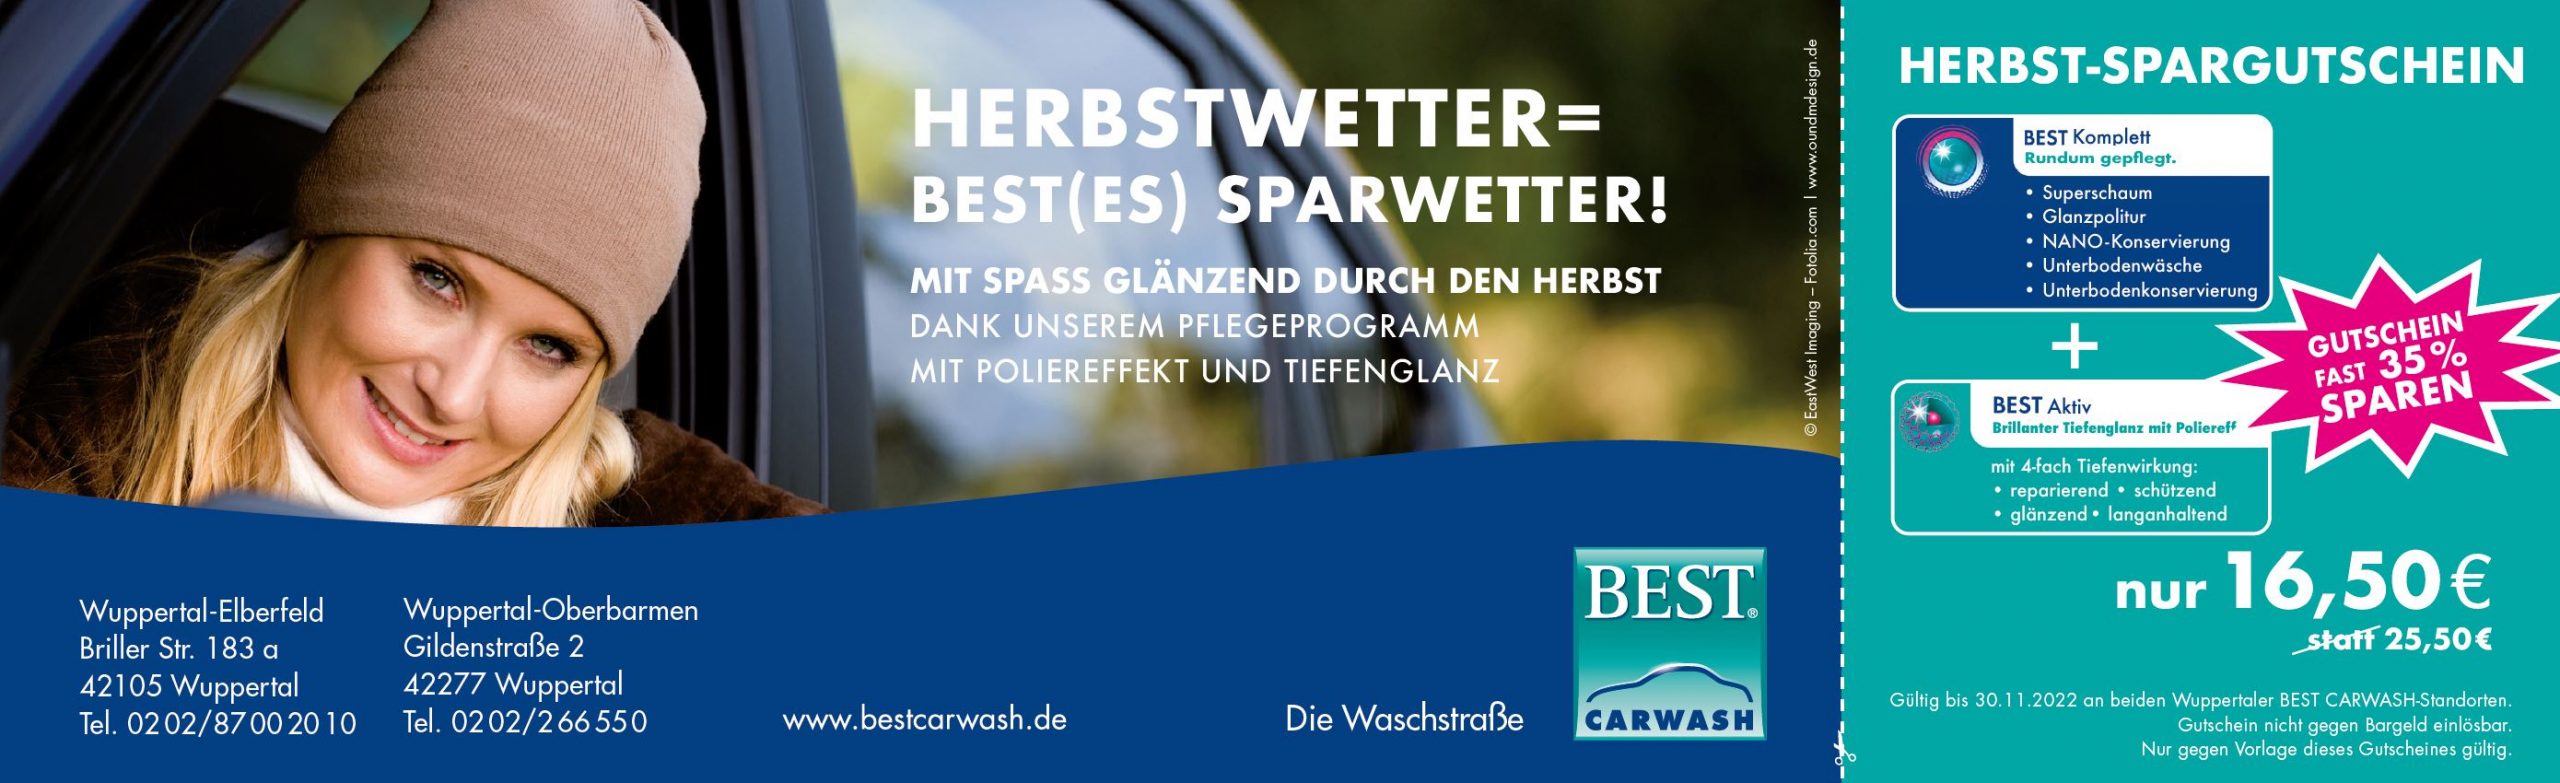 BEST Carwash Wuppertal - Herbstangebot 2022 3